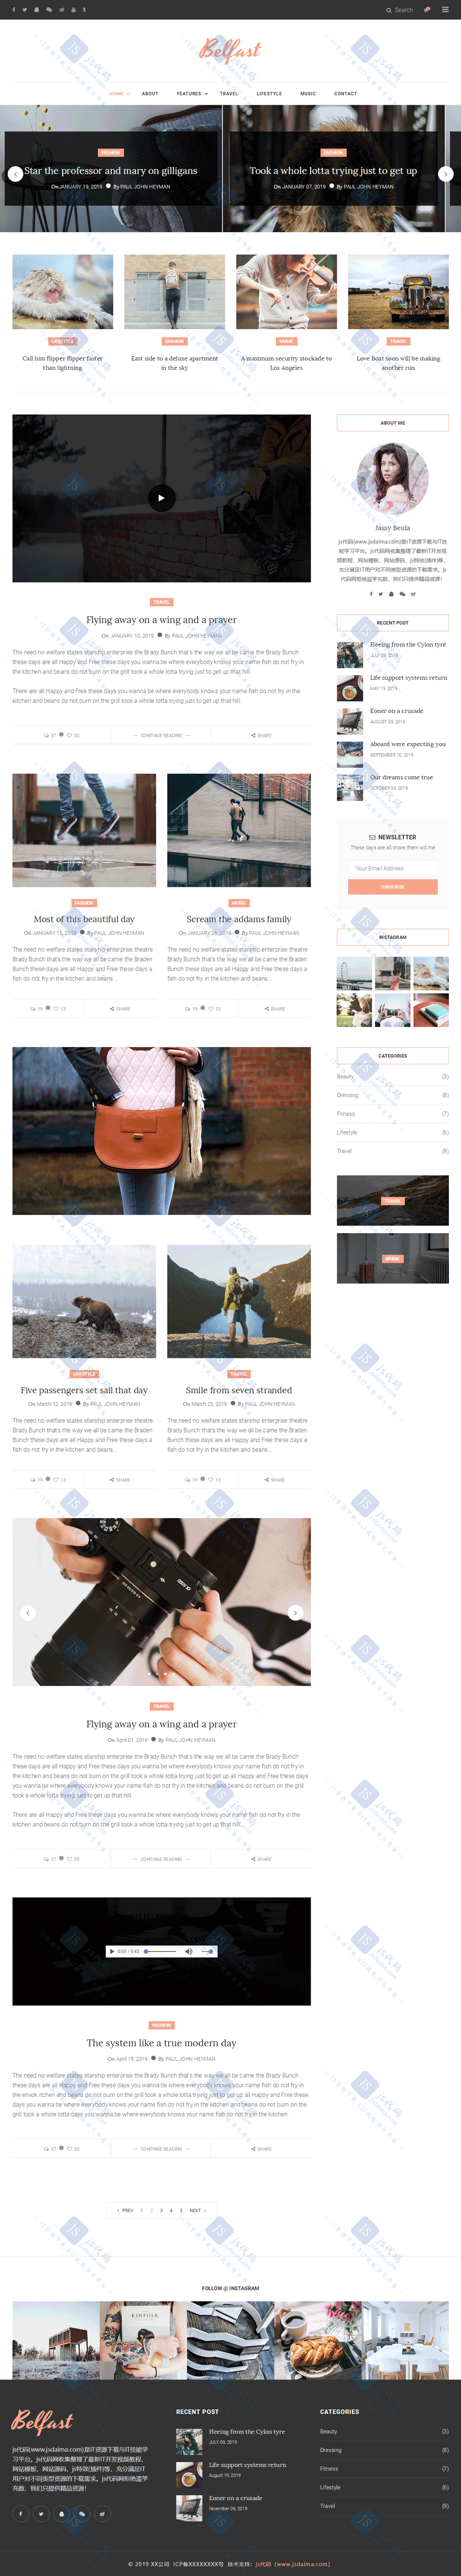 宽屏简洁大气个人艺术摄影博客HTML5响应式网站模板